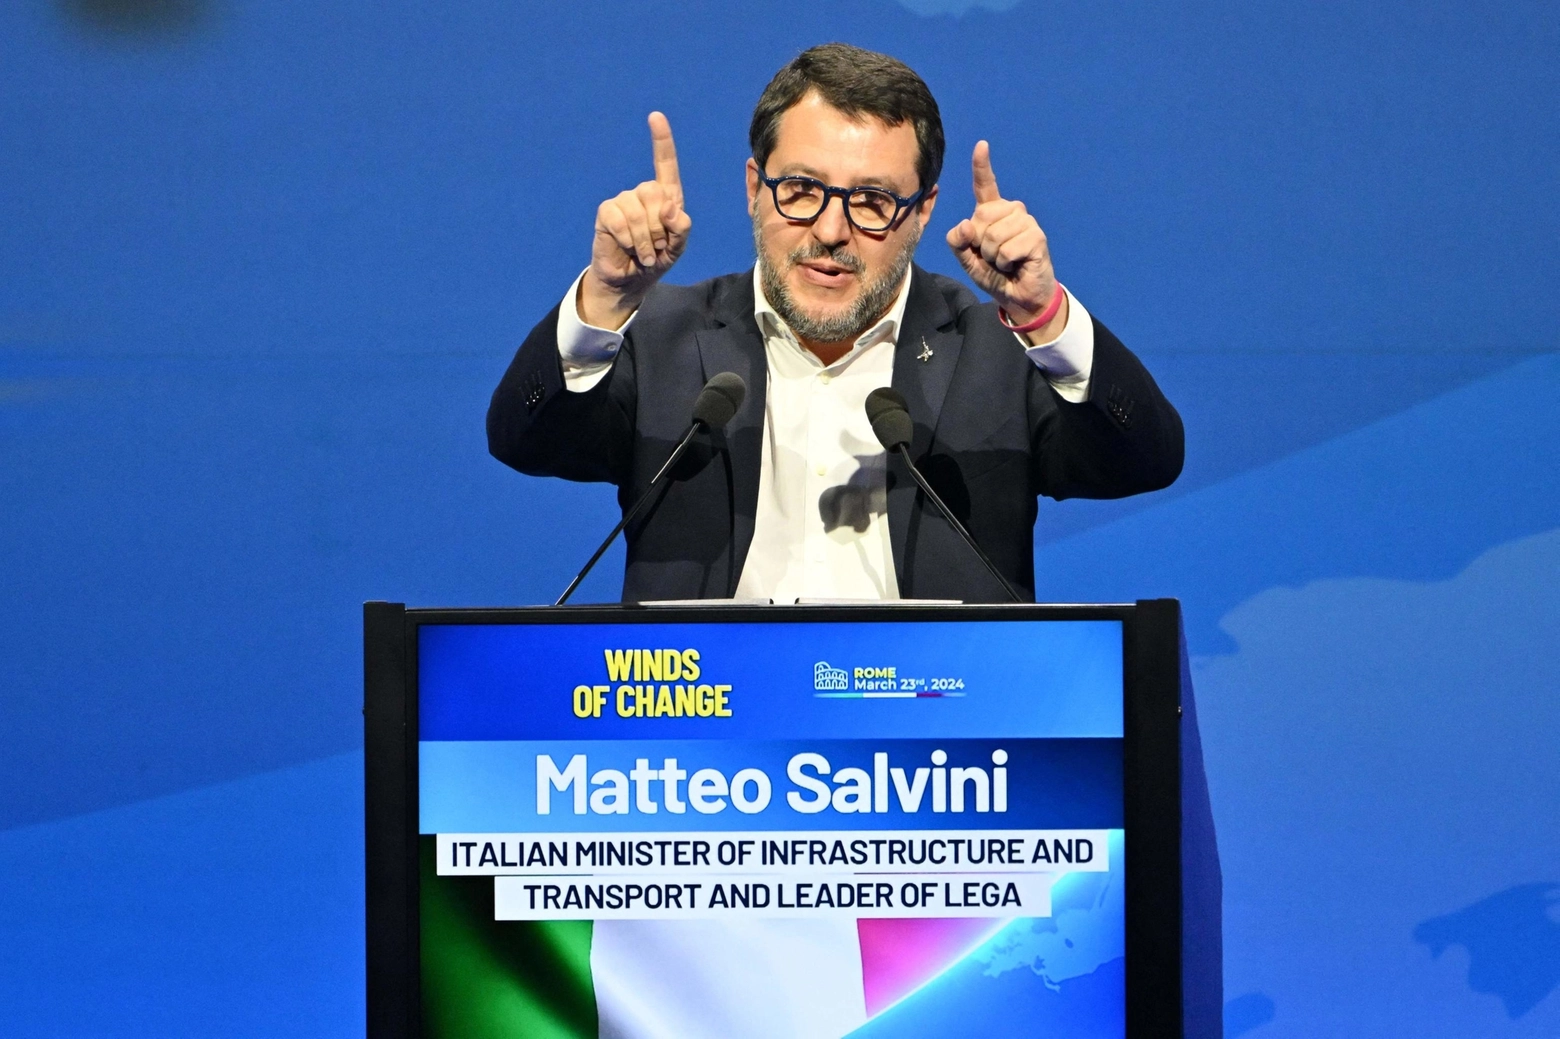 Matteo Salvini alla convention del partito Identità e democrazia "Winds of Change" in corso a Roma